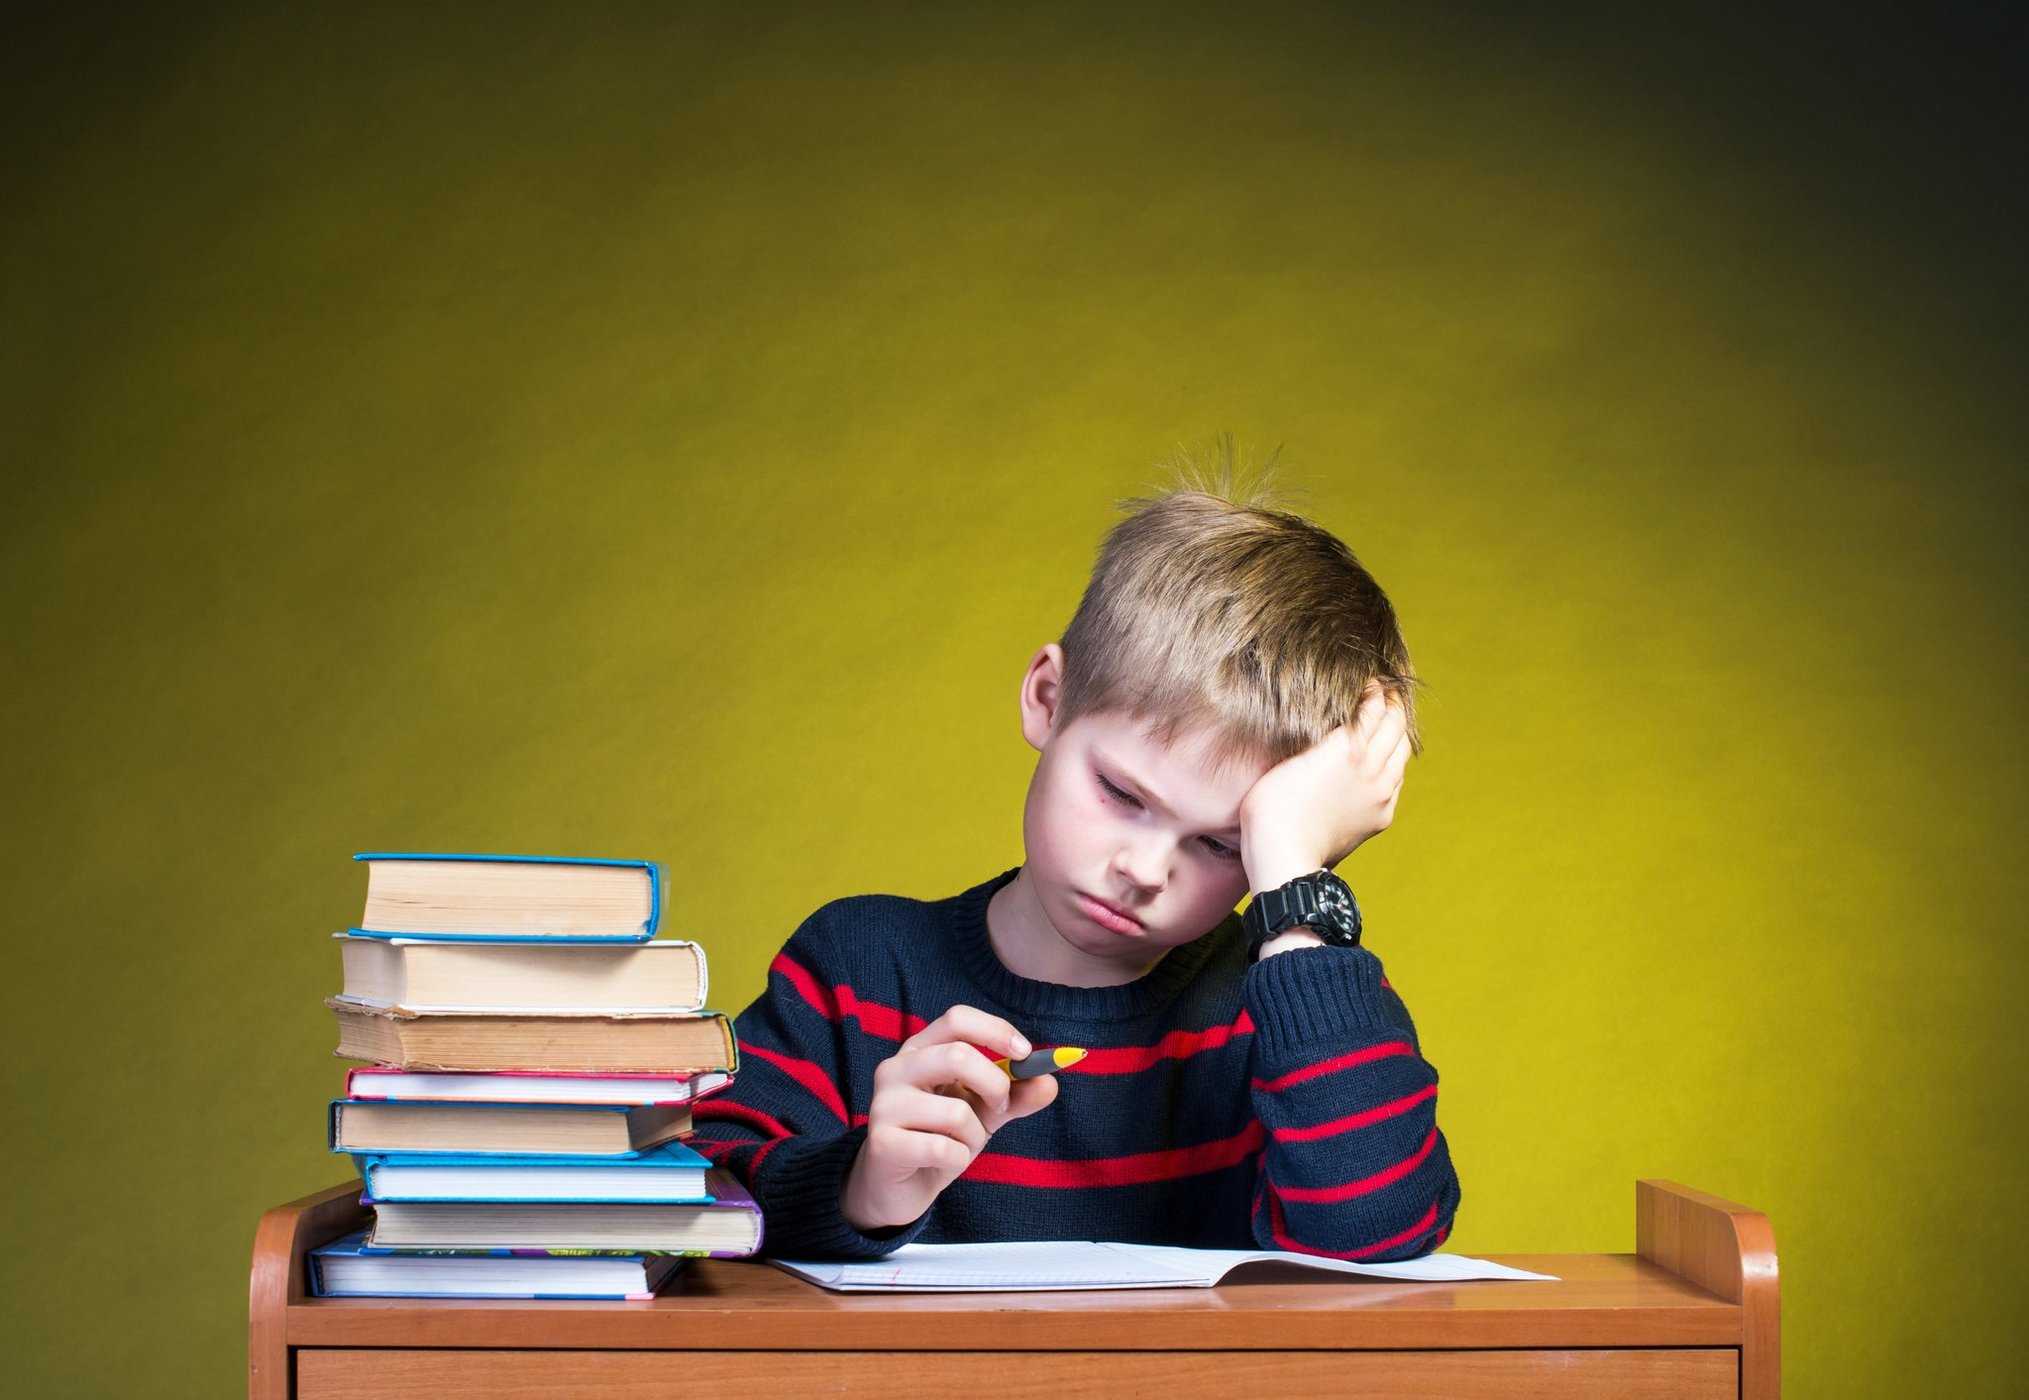 Terlalu banyak kerja rumah tidak baik untuk kesihatan anak-anak